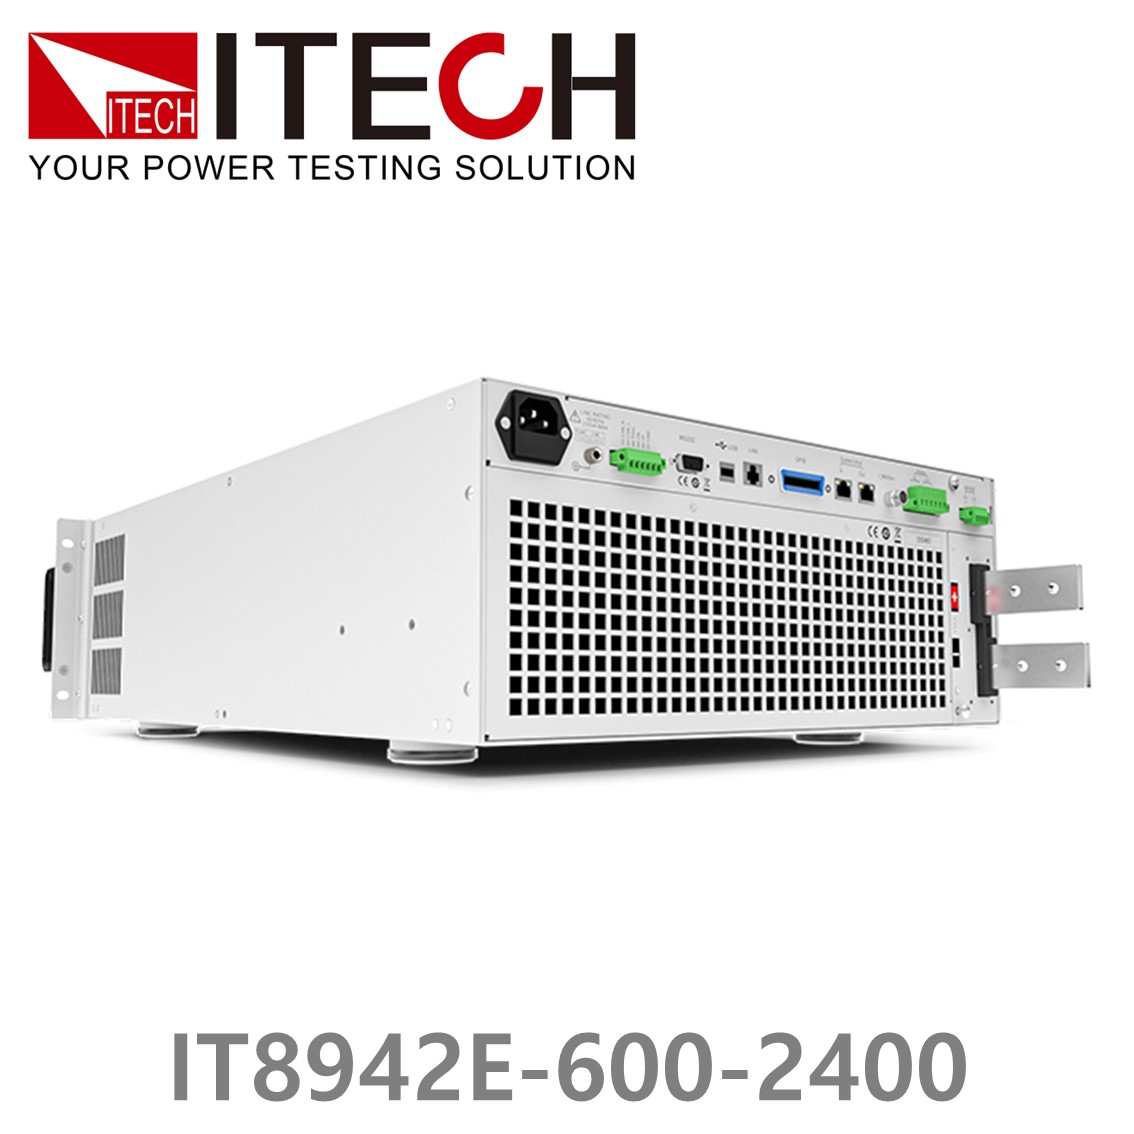 [ ITECH ] IT8942E-600-2400  고성능 고전력 DC 전자로드 600V/2400A/42kW (37U)